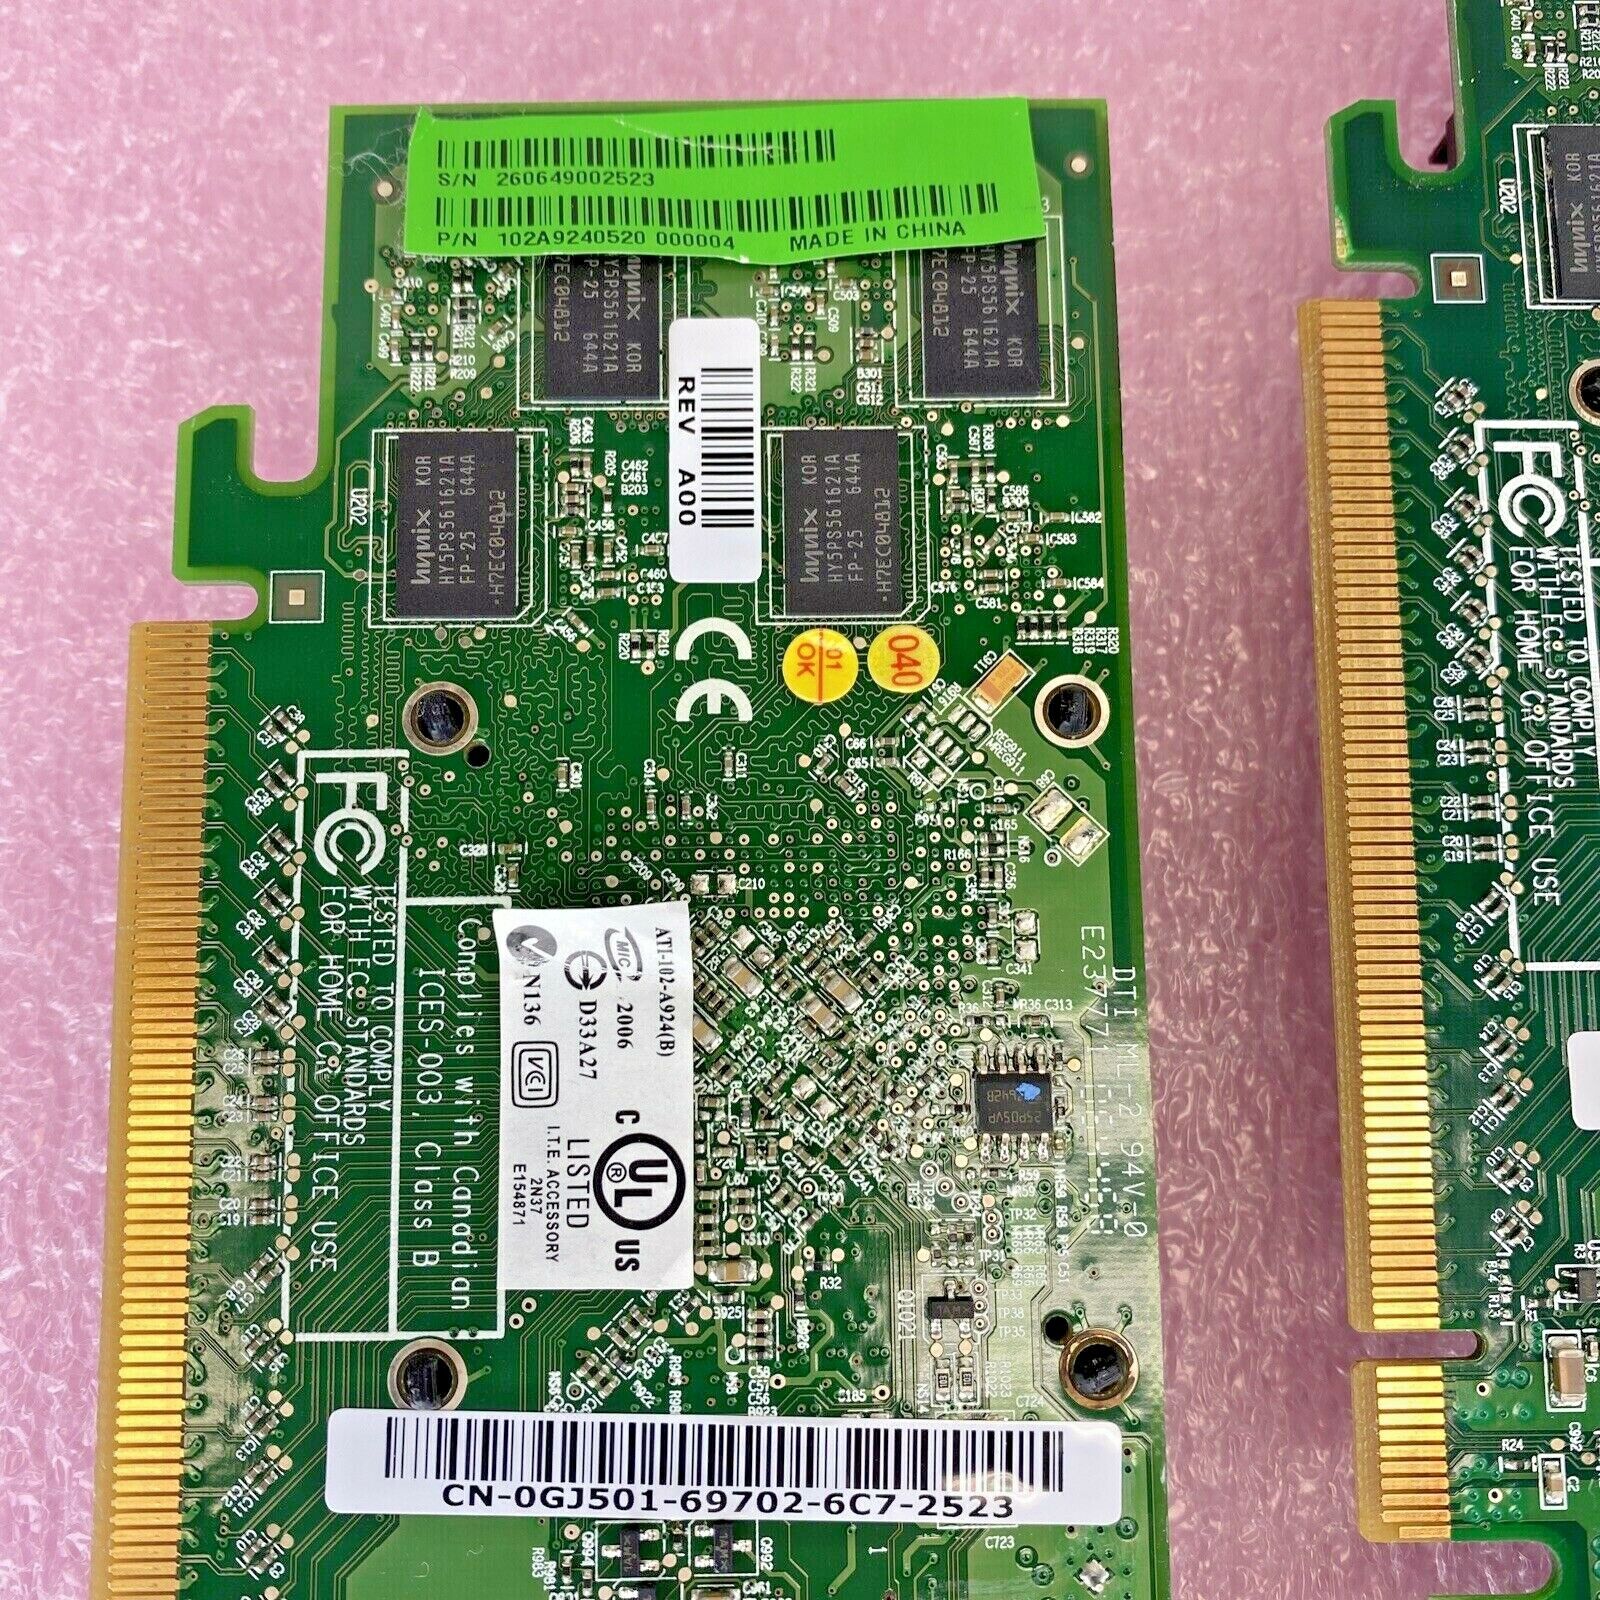 Lot of 2 ATI 0GJ501 Radeon 256MB DDR2 PCIe DMS-59 S-Video graphics card GPU